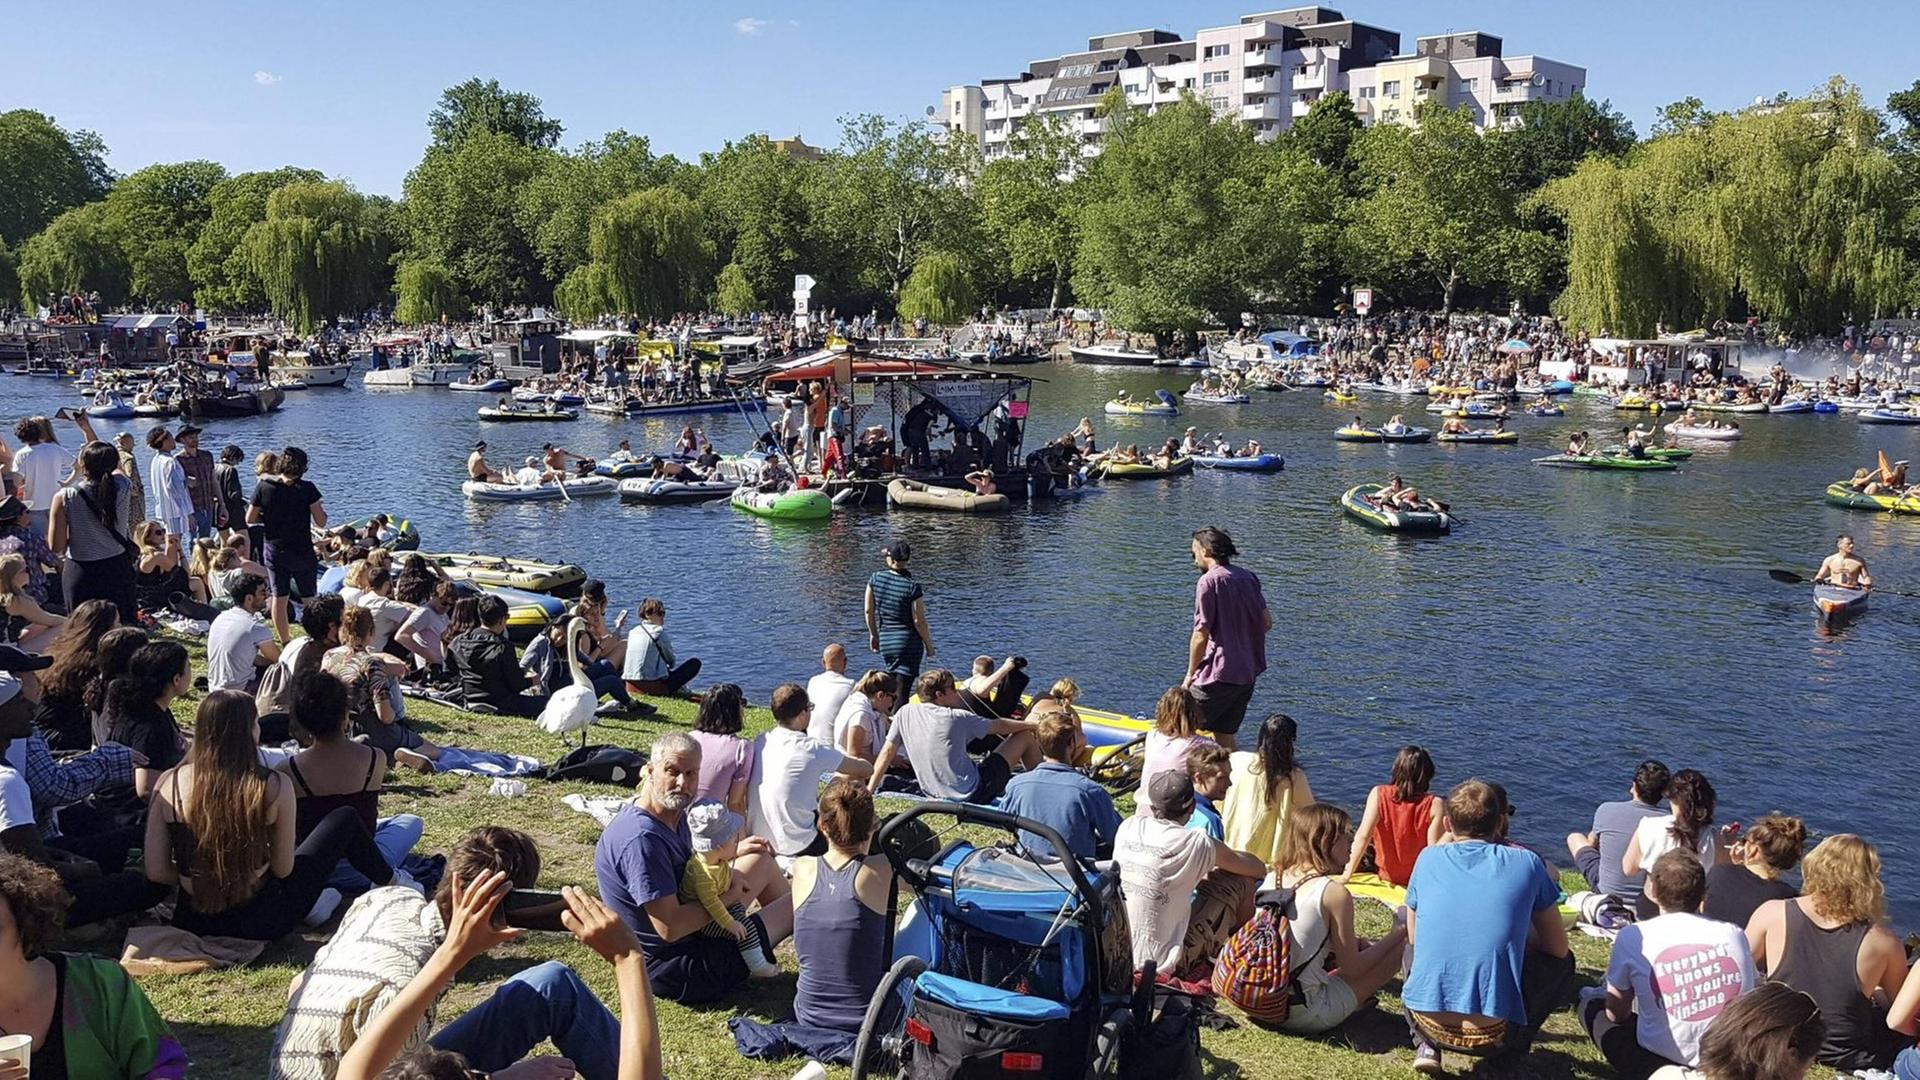 Am Berliner Landwehrkanal versammeln sich bei Sonnenschein ca. 1500 Menschen auf Booten und am Ufer um in Zeiten der Coronapandemie mit Musik und Partystimmung für die Rettung der Clubszene zu demonstrieren.